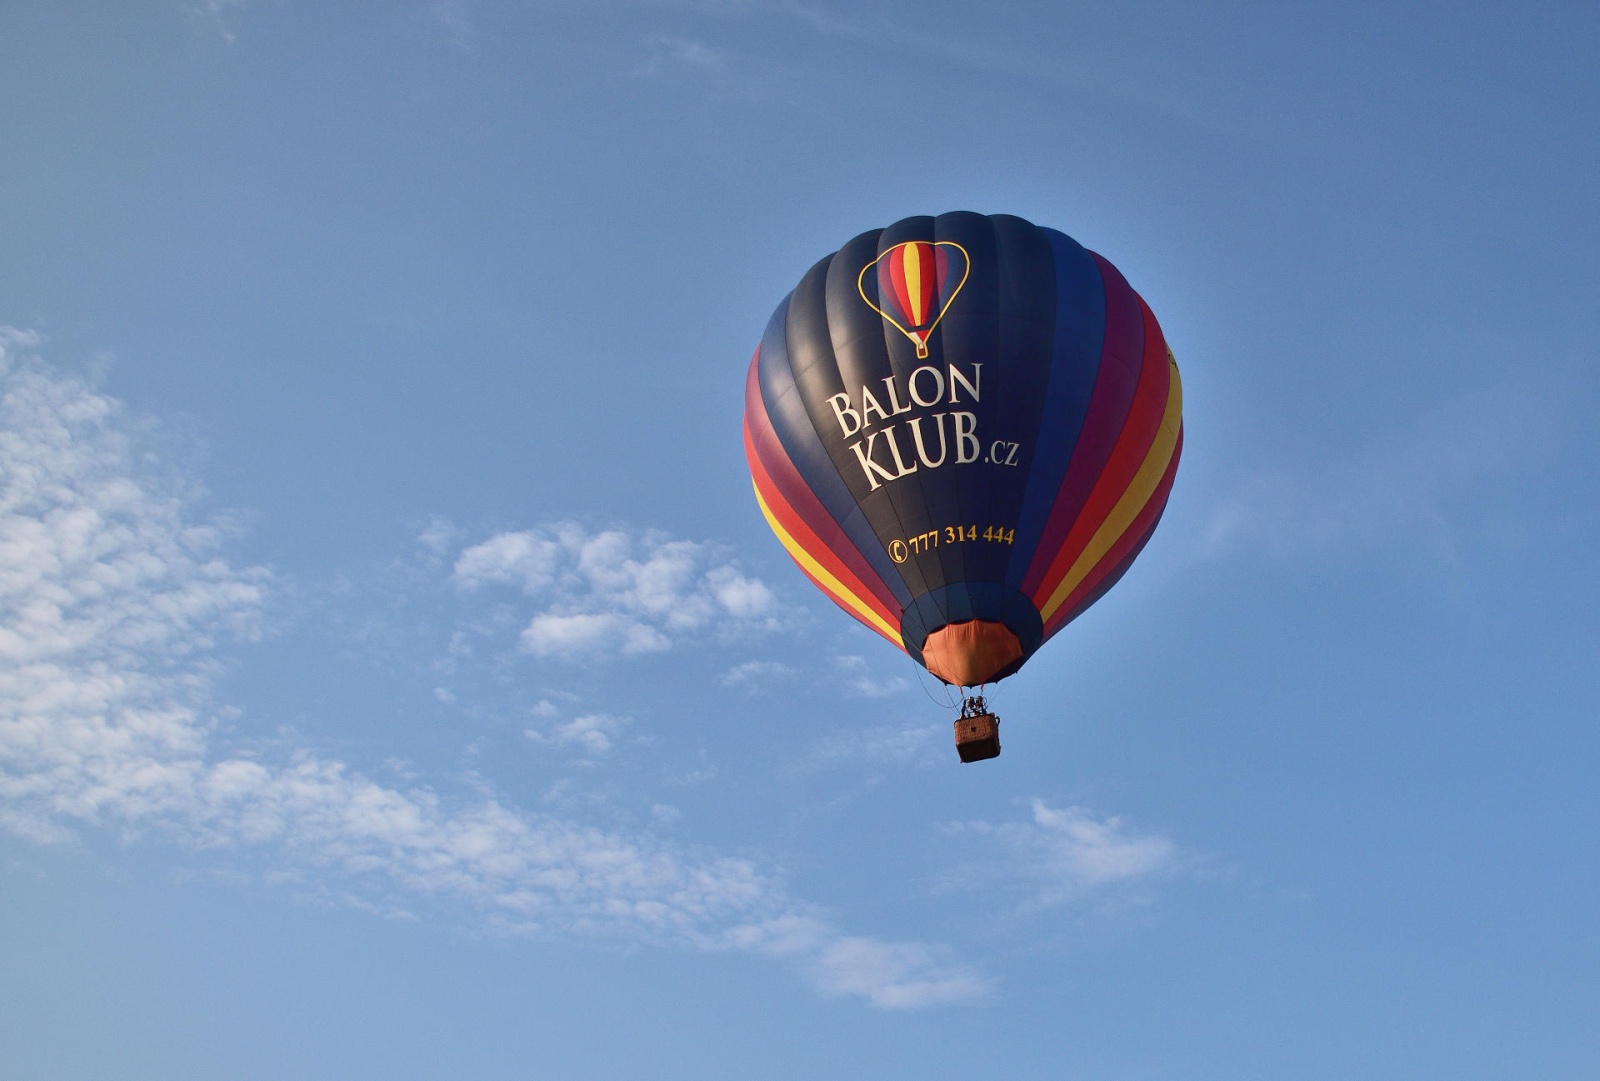 FOTO, VIDEO: Vzhůru do oblak! Balony se vznášely vysoko nad hlavami diváků  - Svitavský deník